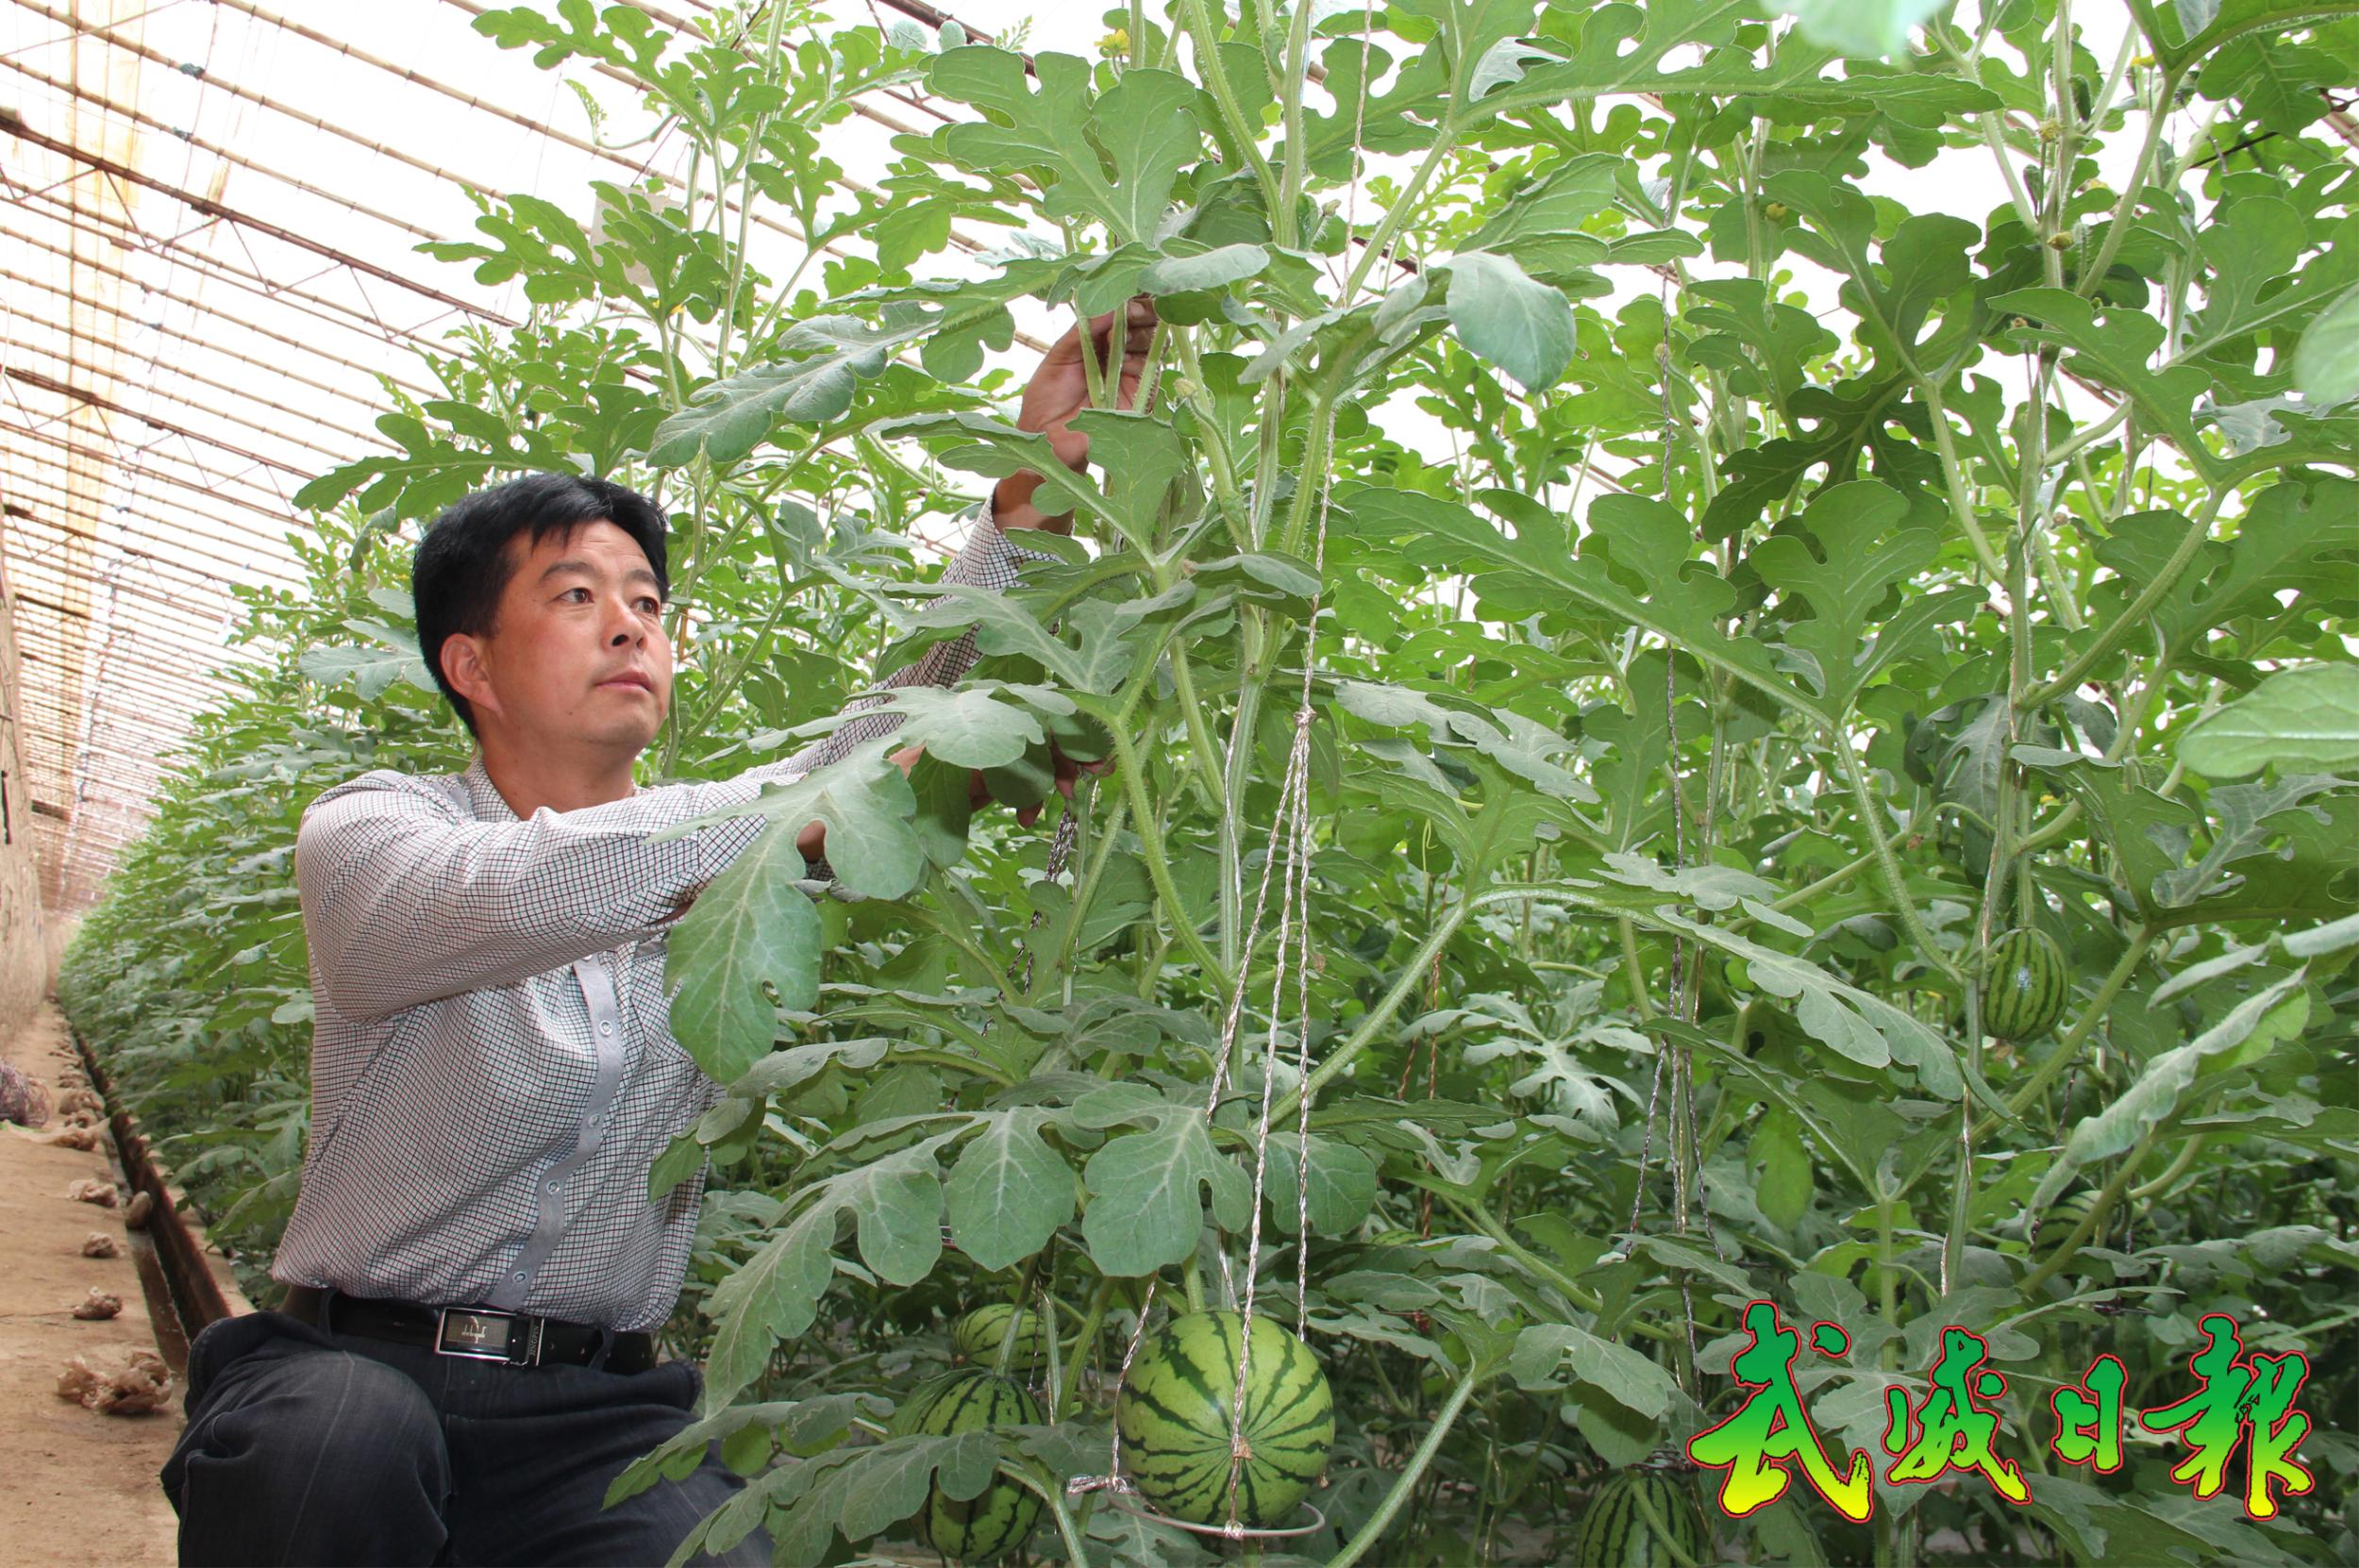 图片:杨国强正在给西瓜苗整枝